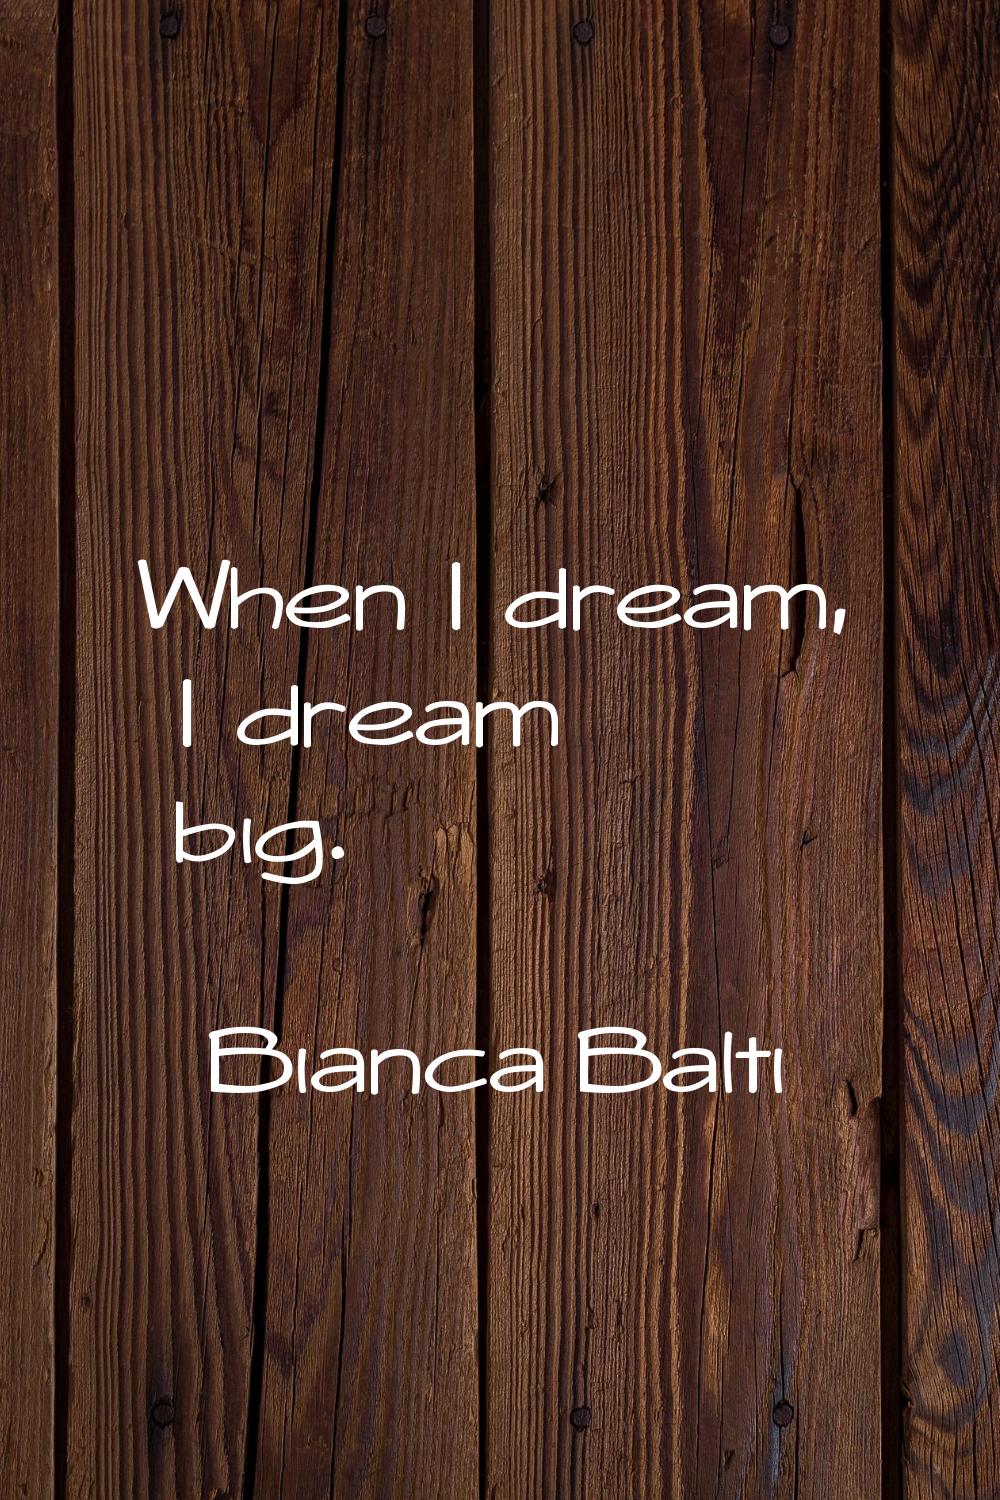 When I dream, I dream big.